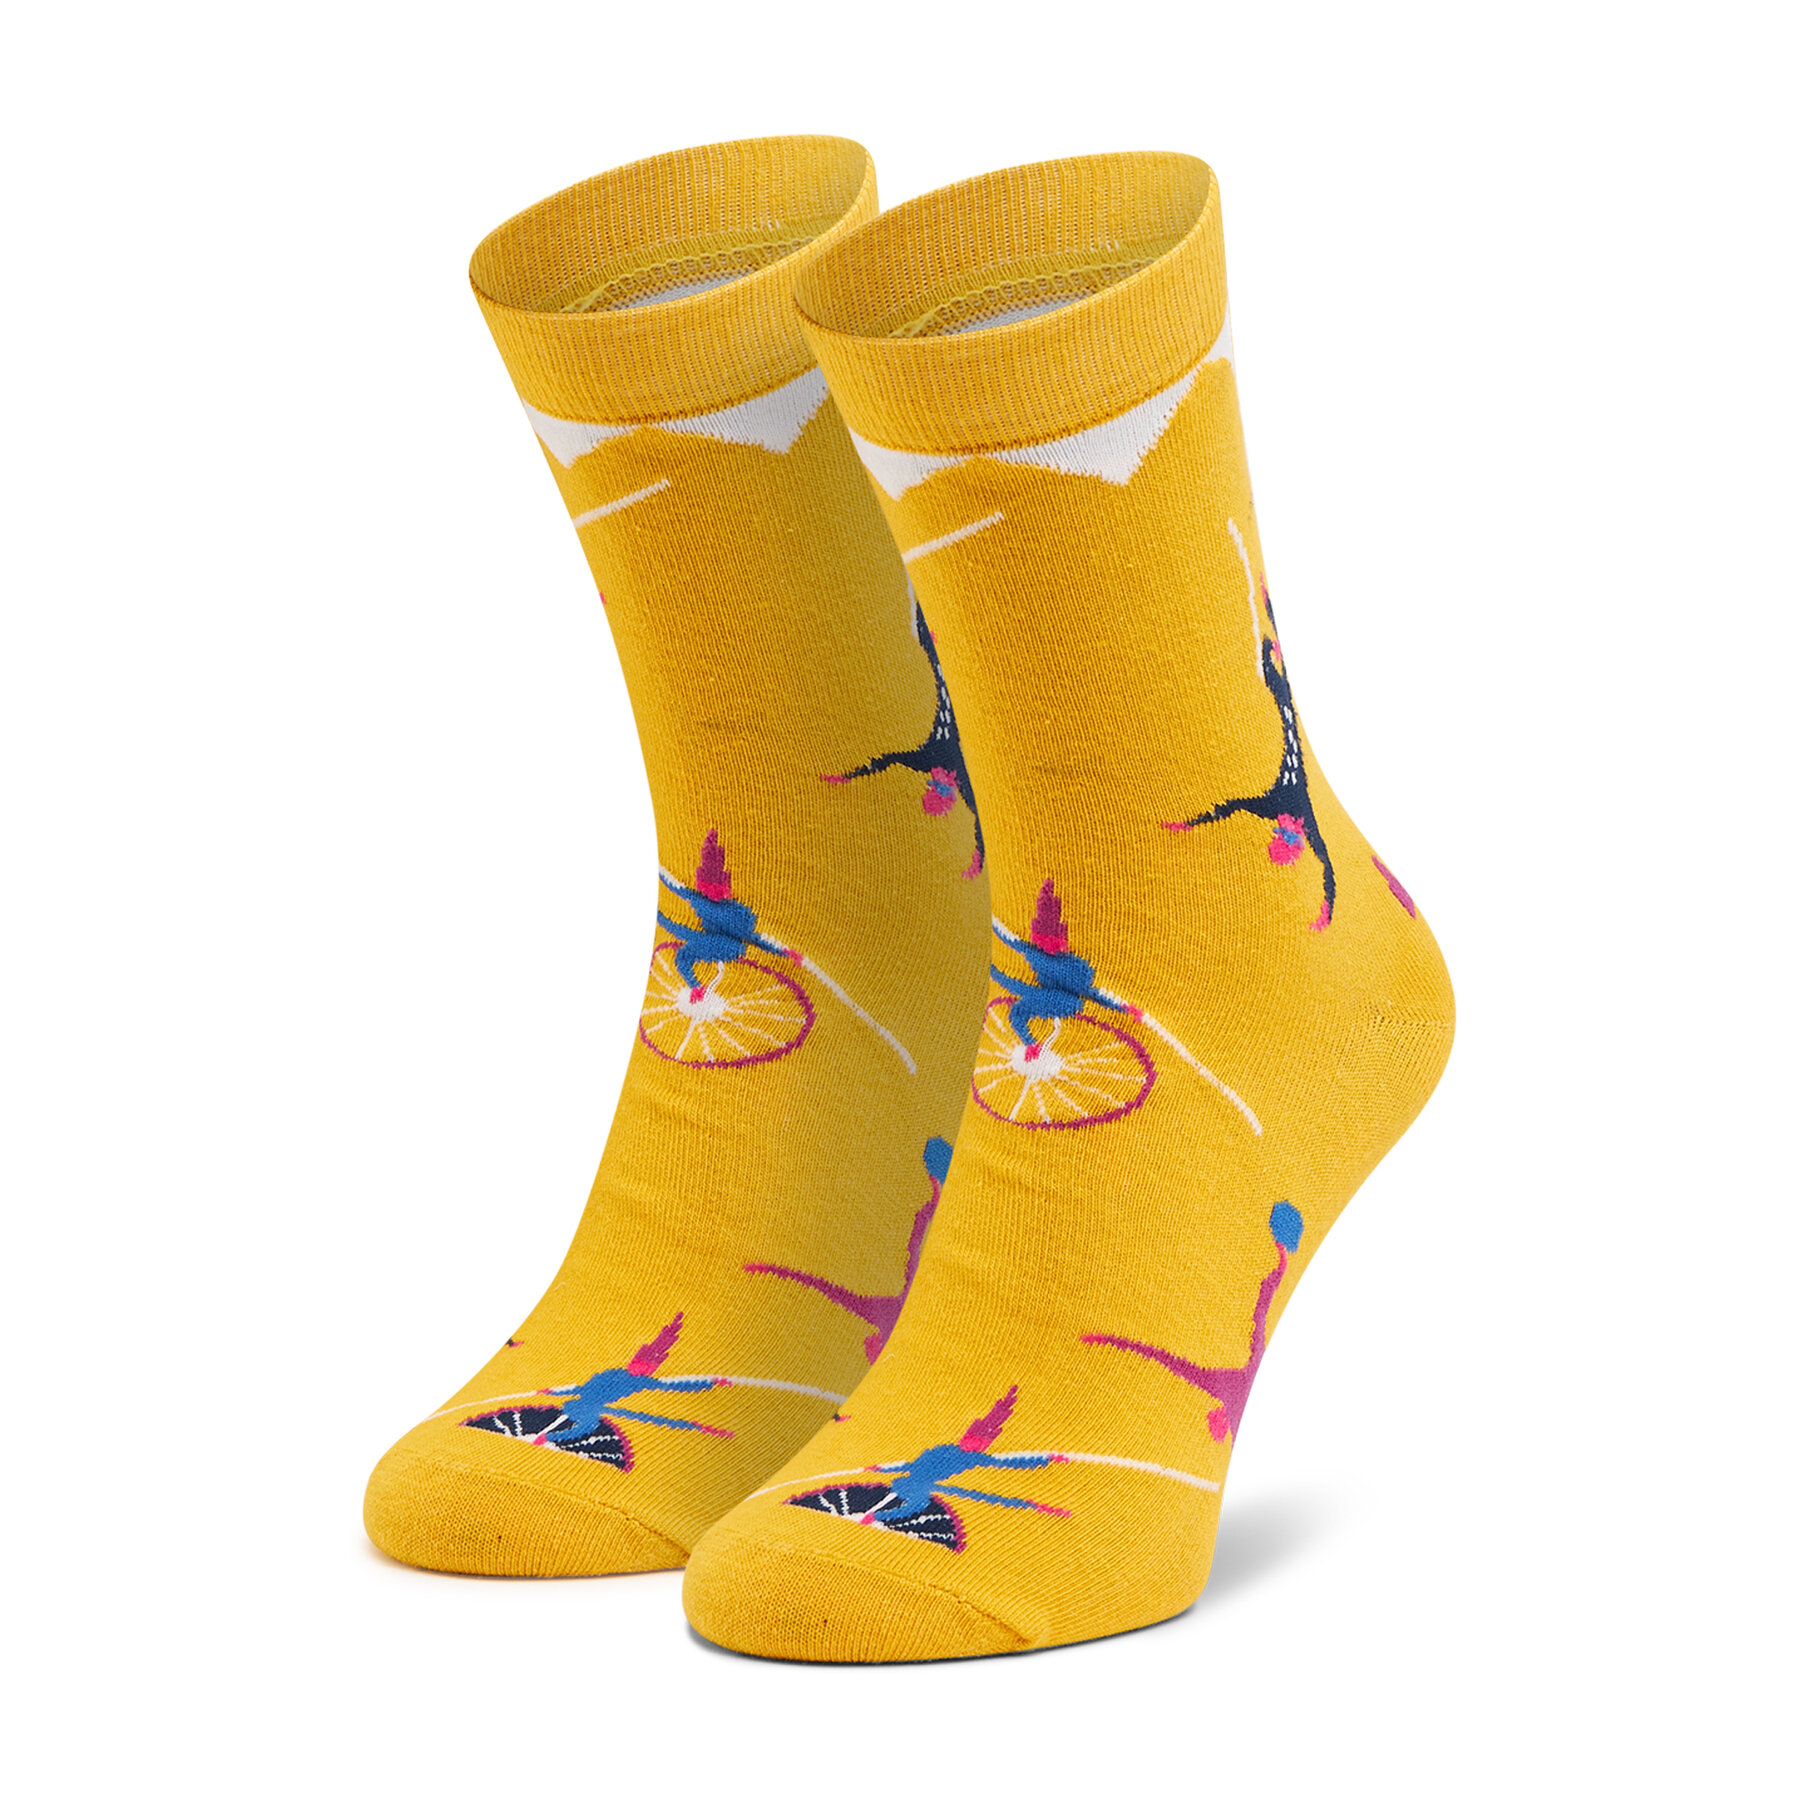 Chaussettes hautes unisex Dots Socks DTS-SX-441-Y Jaune